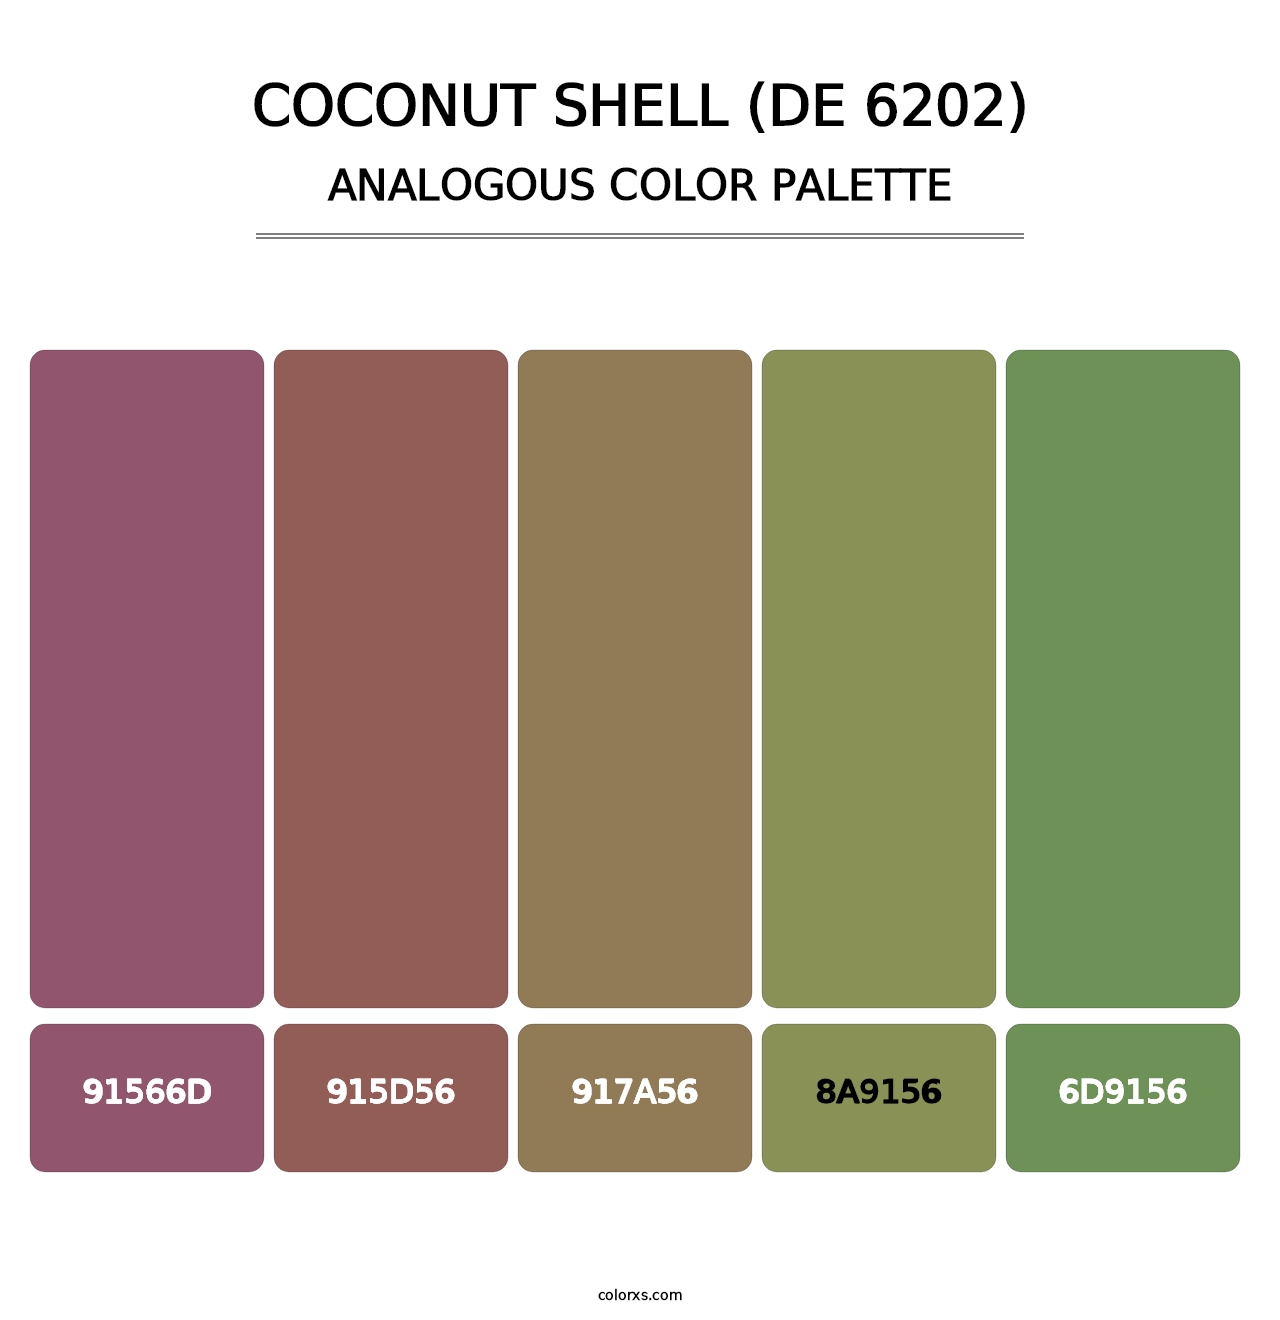 Coconut Shell (DE 6202) - Analogous Color Palette